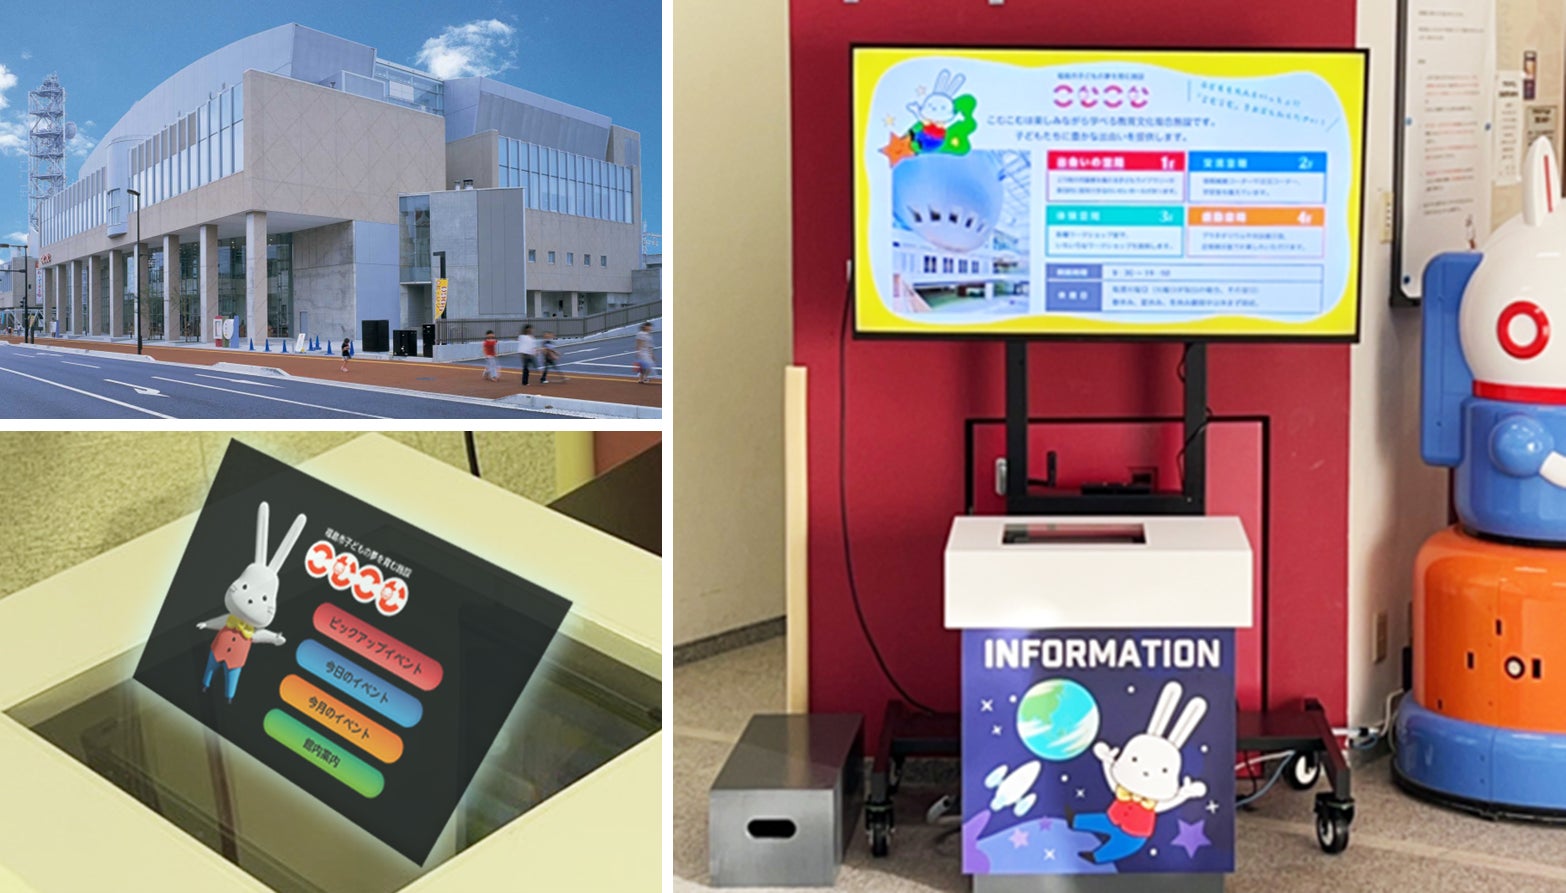 福島市の教育文化複合施設「こむこむ」でマクセルの空中ディスプレイ(AFID)が組み込まれた案内サイネージシステムの運用開始